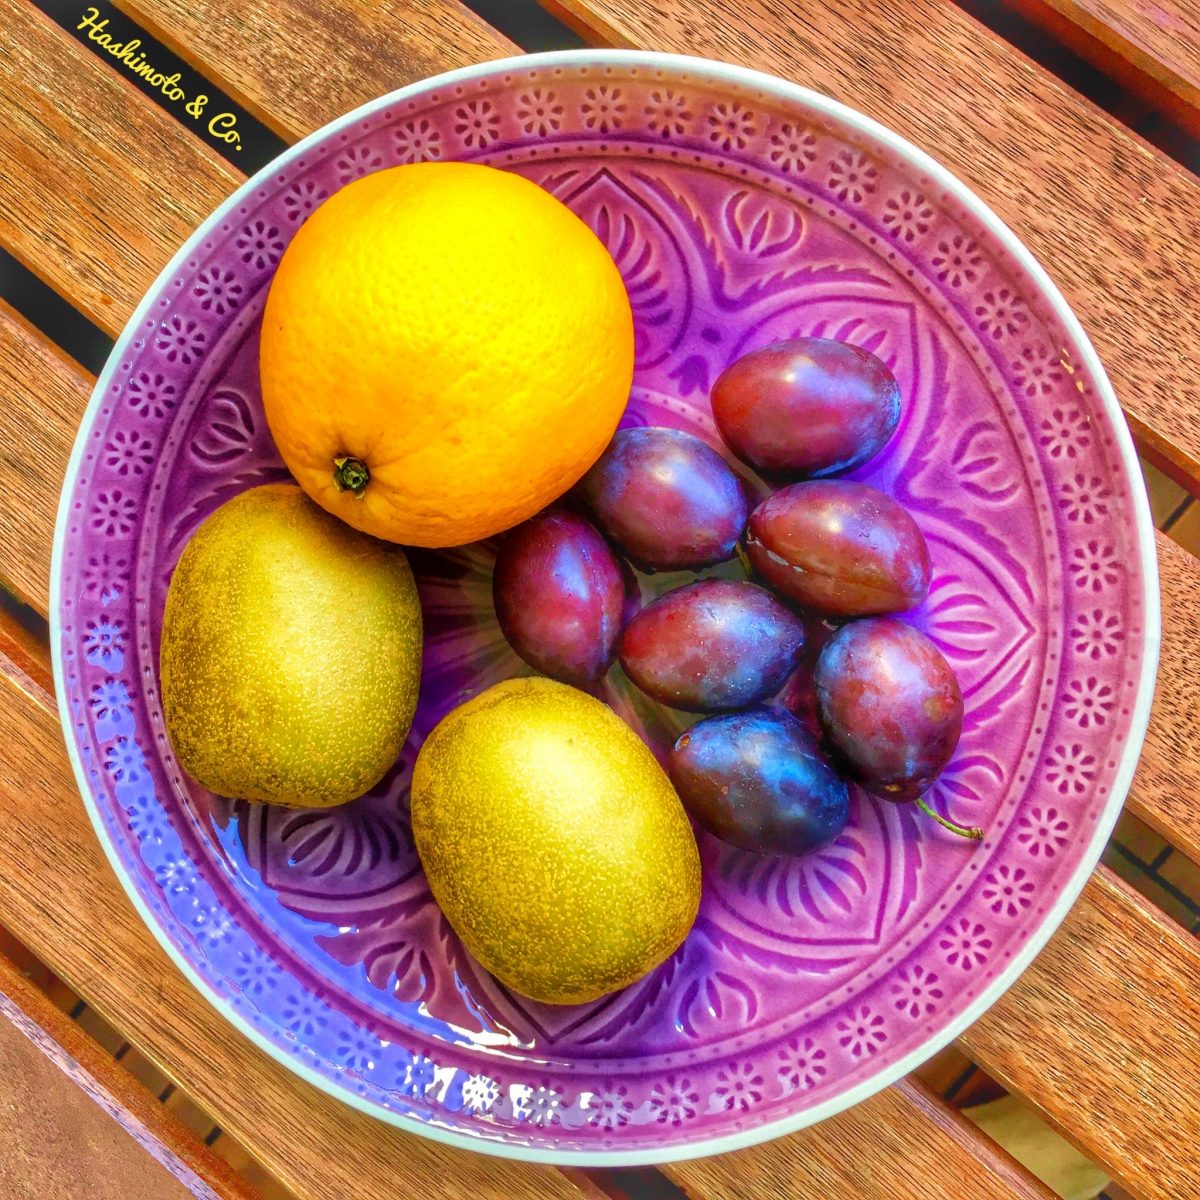 Zwei Kiwis, eine Orange und eine Hand voll Pflaumen. Damit ist dein Fructose-Limit für den Tag erreicht.